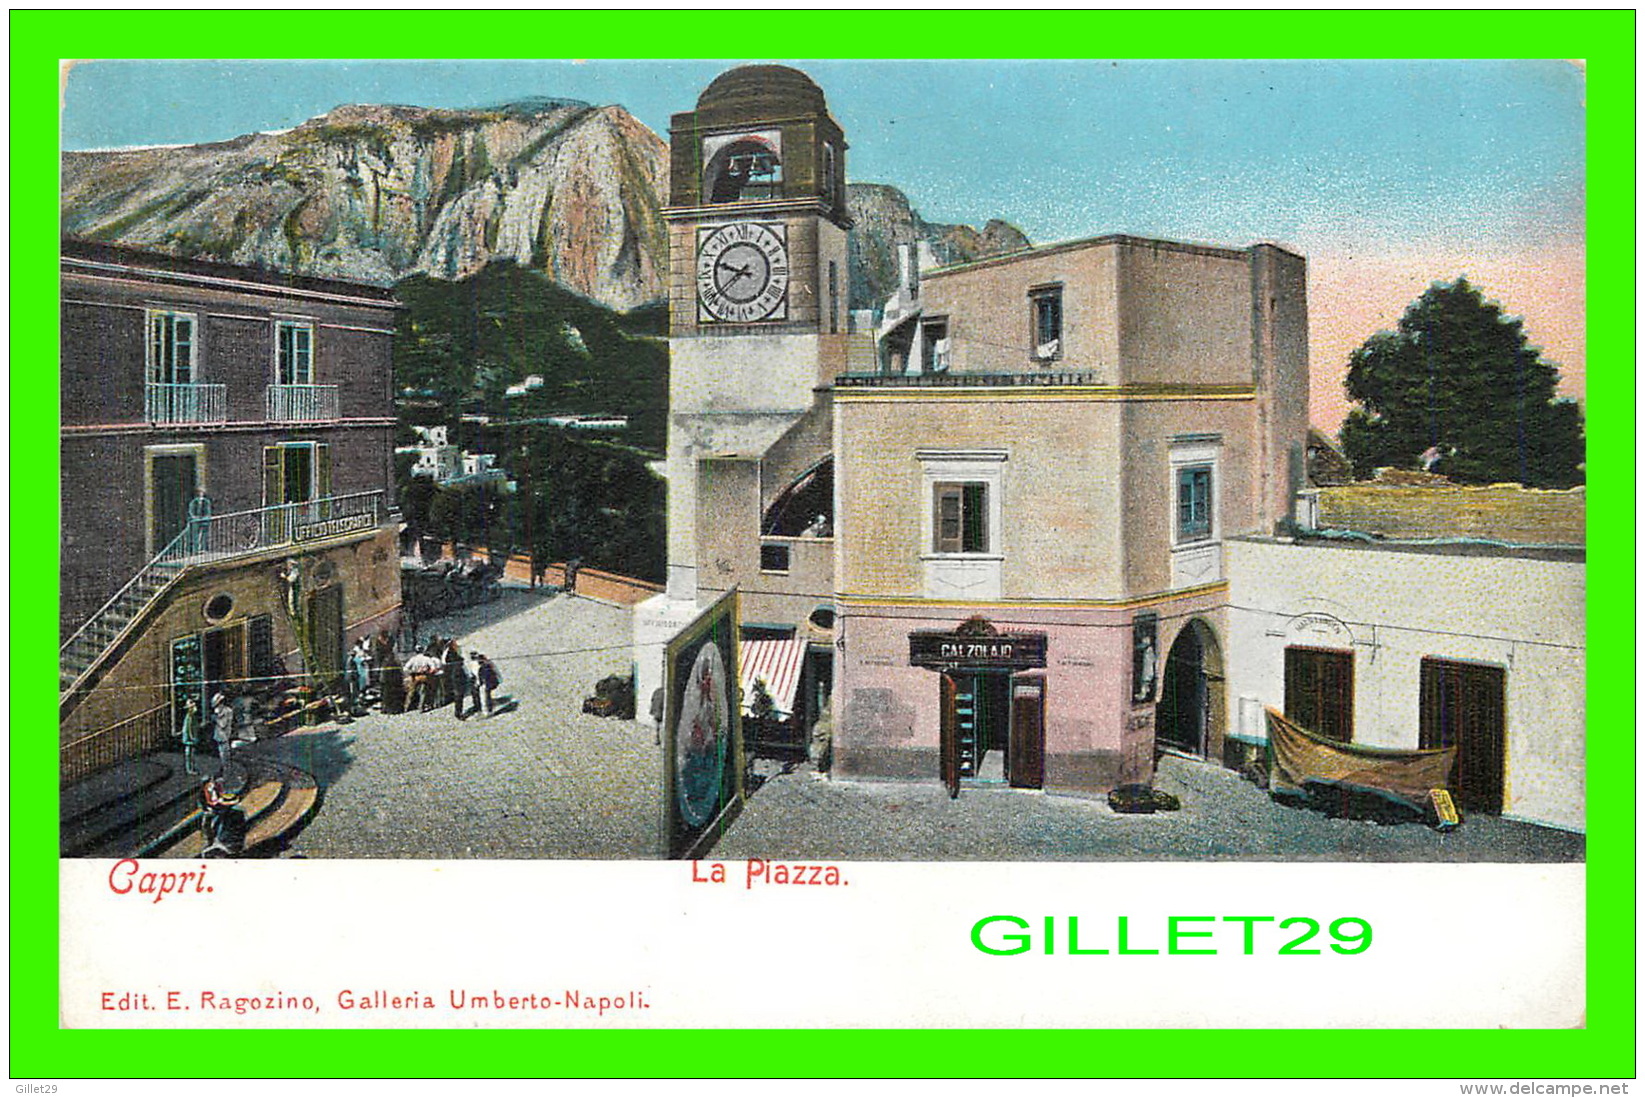 CAPRI, ITALIE - LA PIAZZA - ANIMATED - EDIT. E. RAGOZINO, GALLERIA - UNDIVIDED BACK - - Napoli (Naples)